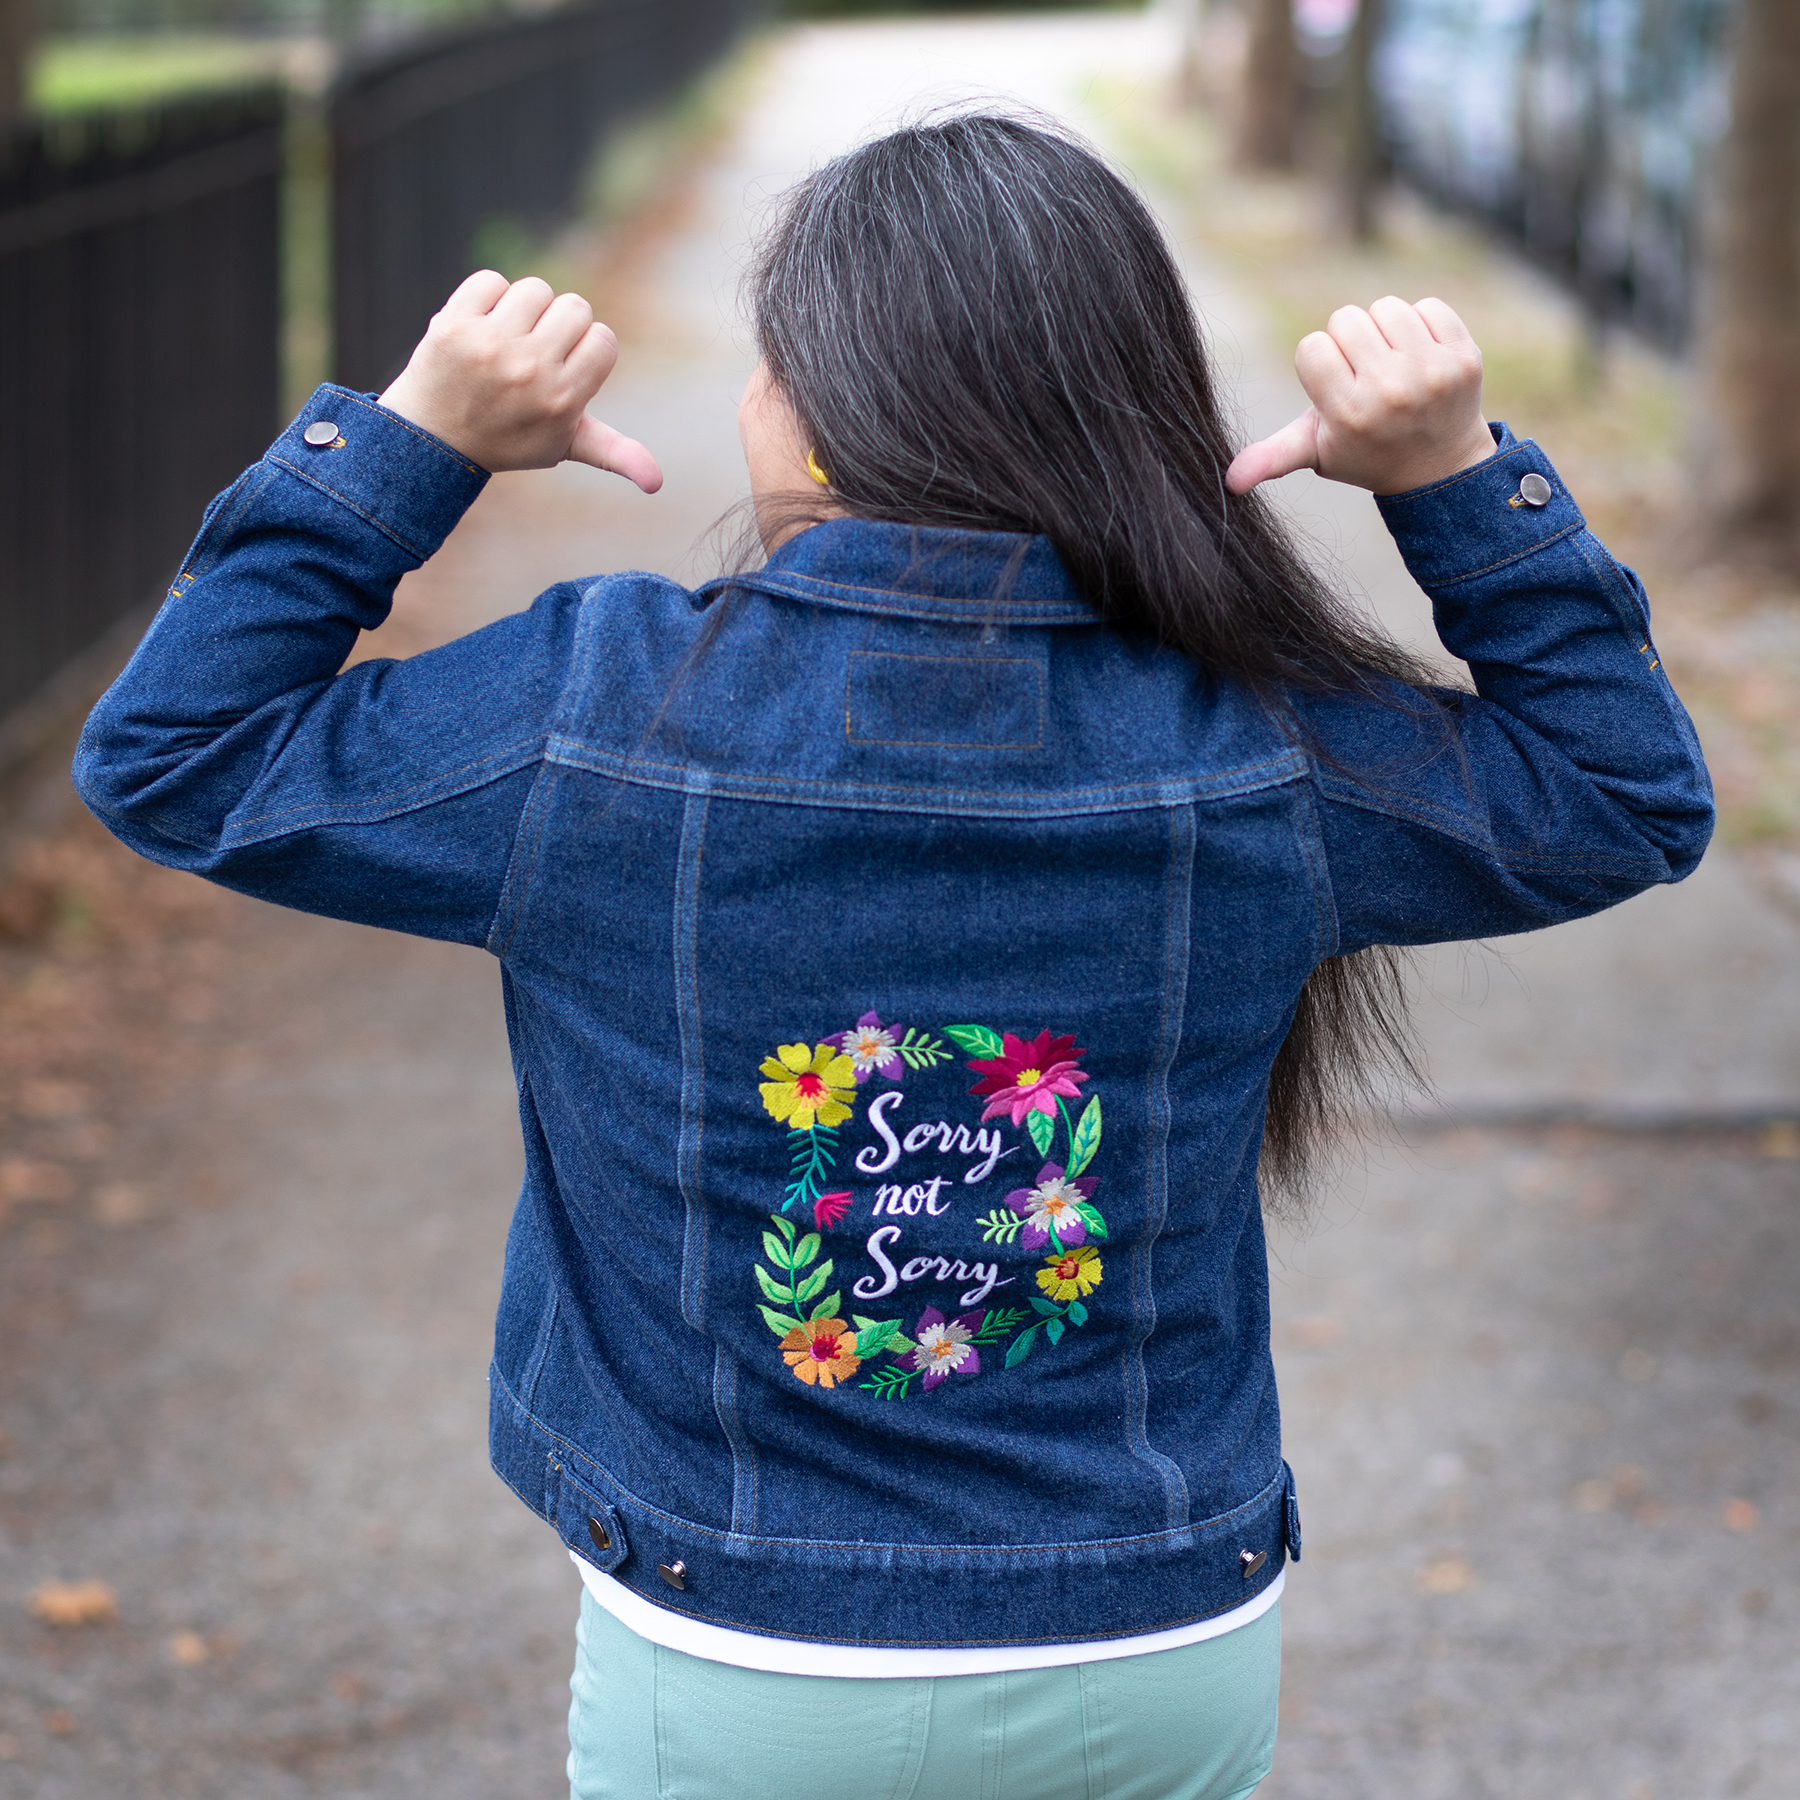 Jeans jacket design for girls 2022, Embroidered Jacket Design